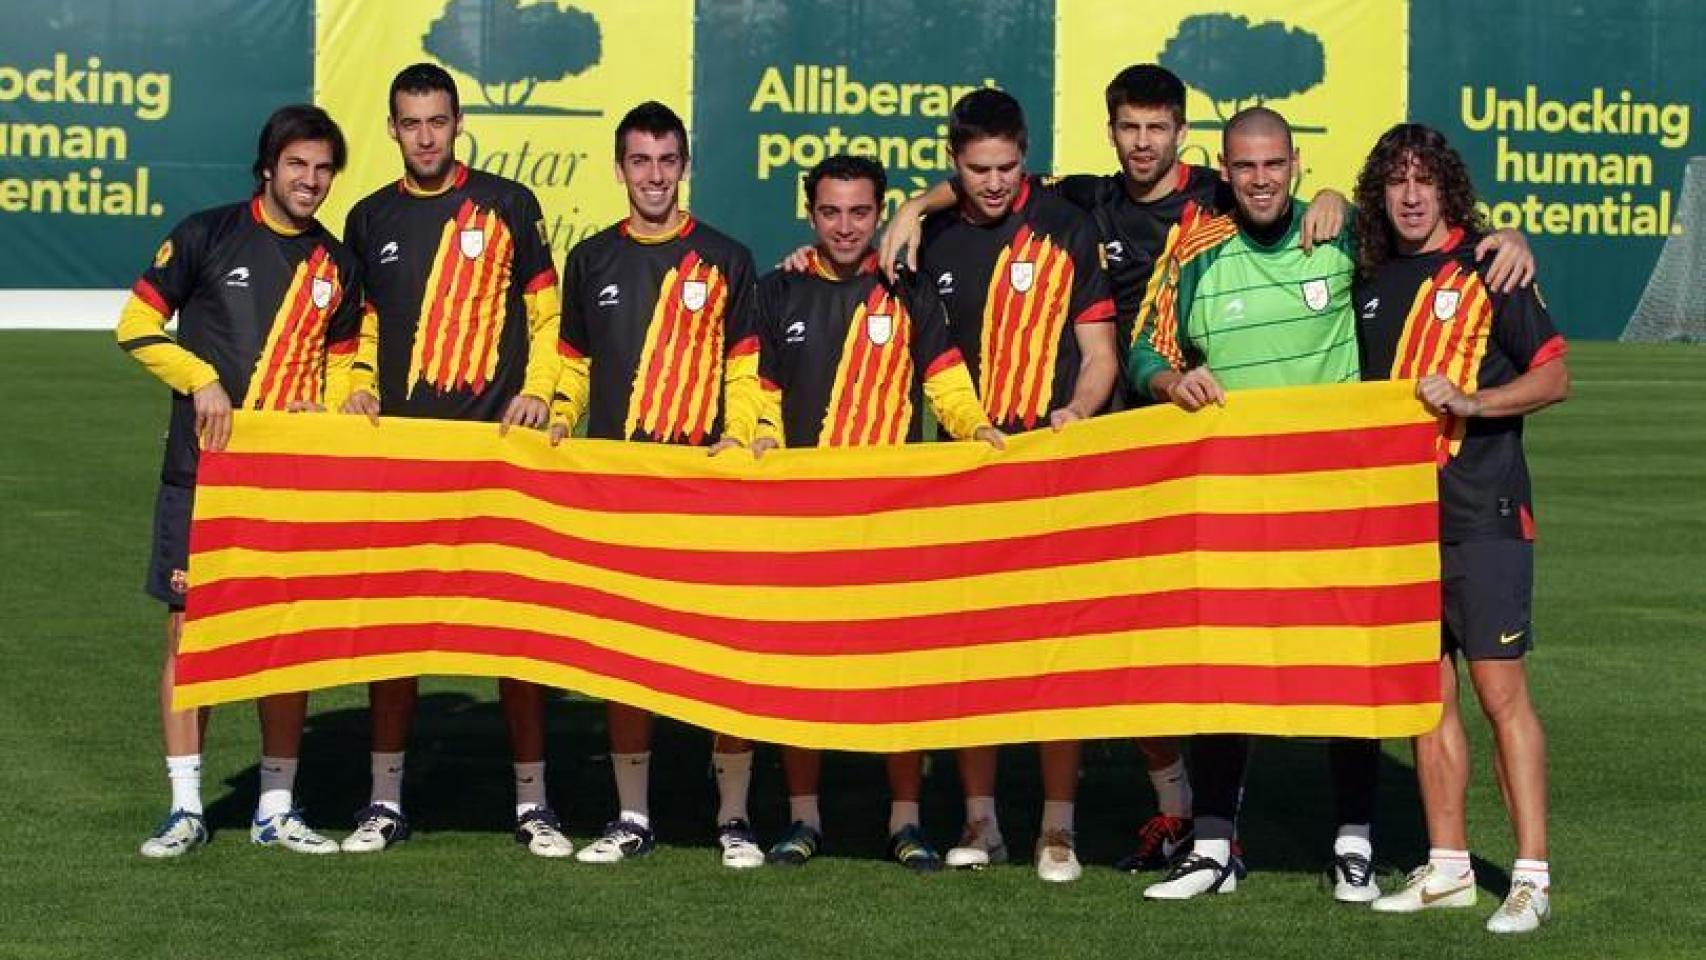 Jugadores del Barcelona, hace unos años, con la camiseta y bandera de Cataluña.